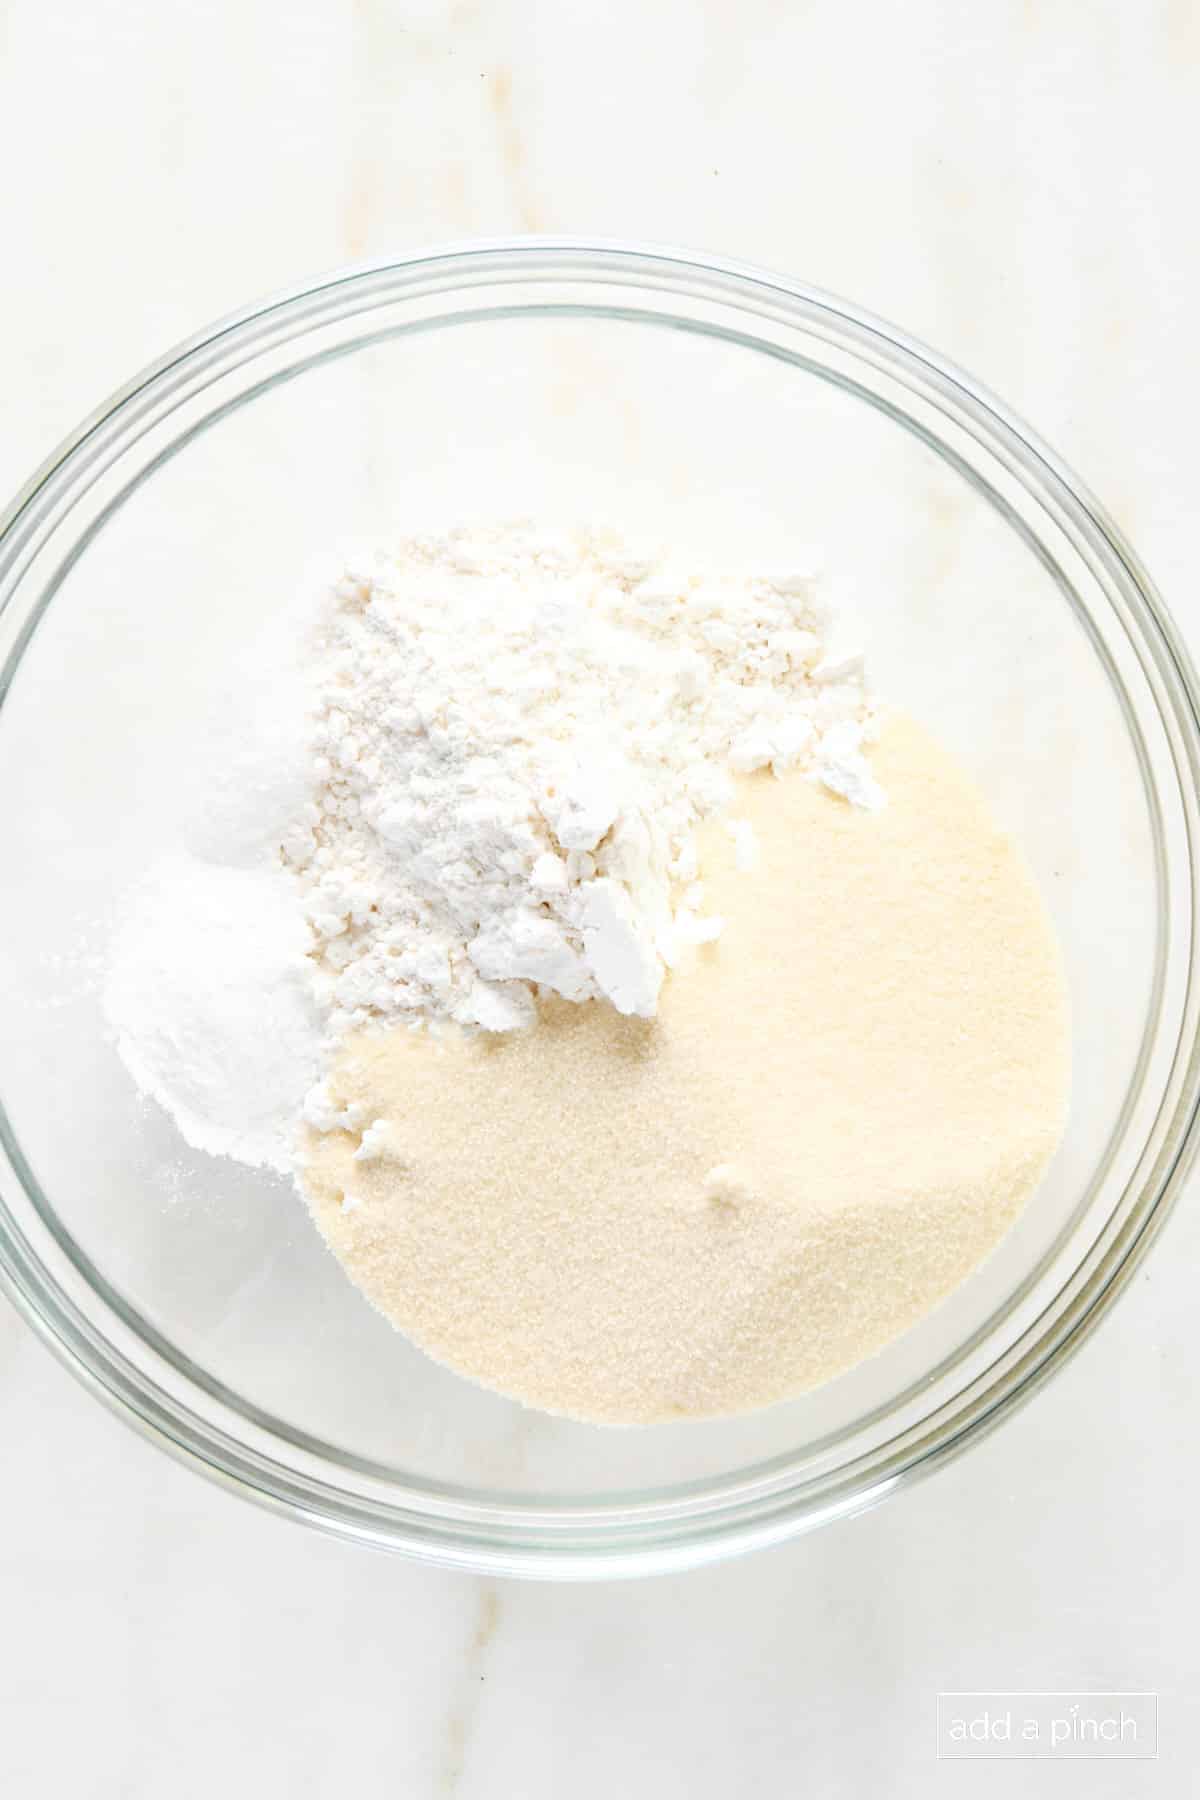 Flour, sugar, baking powder, and salt in a glass bowl.